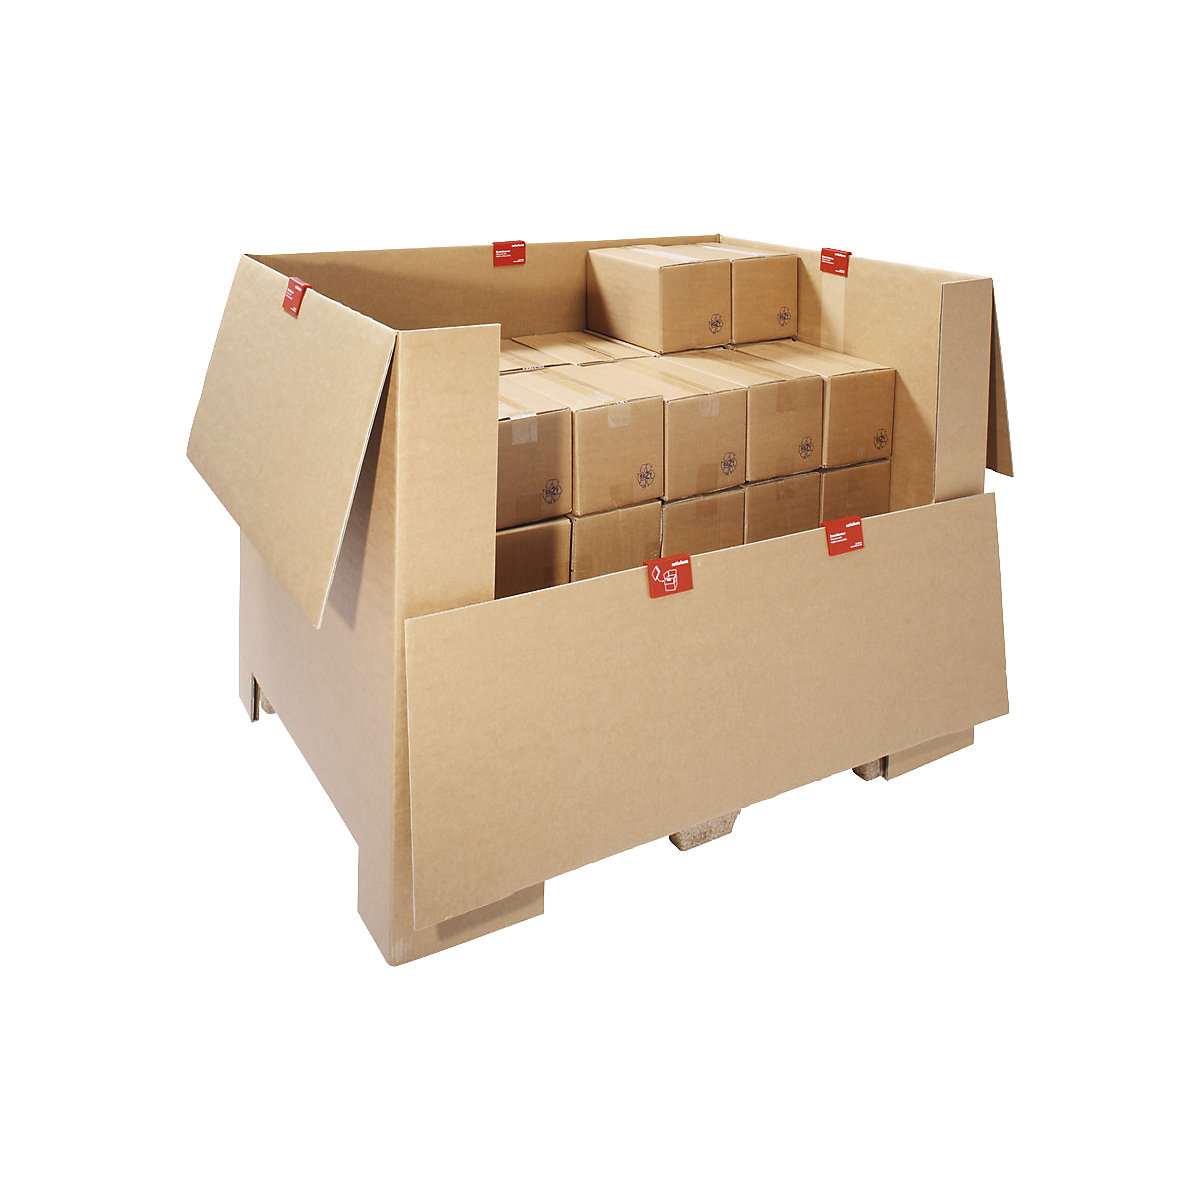 Karton für Pressholz-Palette, braun, LxBxH 1200 x 800 x 790 mm, 1 Europalette-1